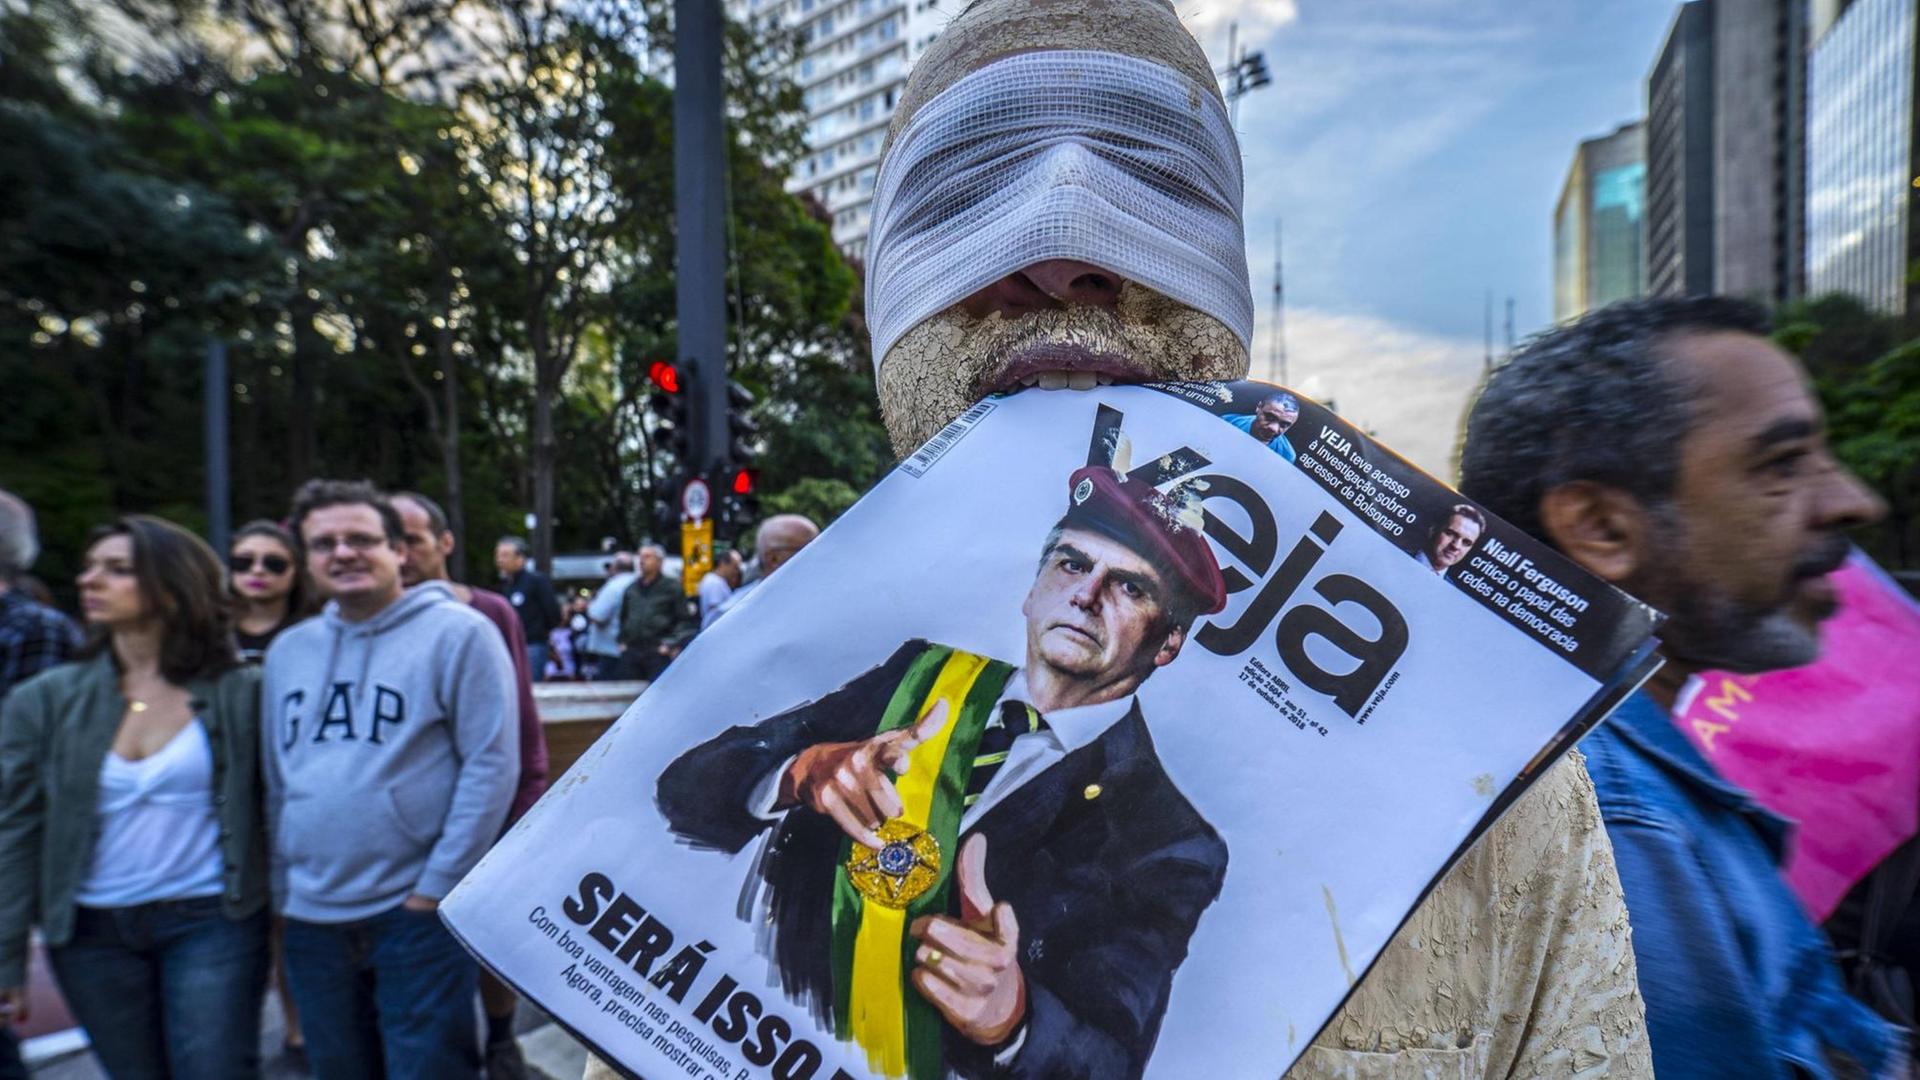 Ein verkleideter Demonstrant mit Binde über der Augenpartie und einer Zeitung, die Jair Bolsonaro abbildet, im Mund, nimmt an Protesten gegen den neuen Präsidenten Brasiliens teil.